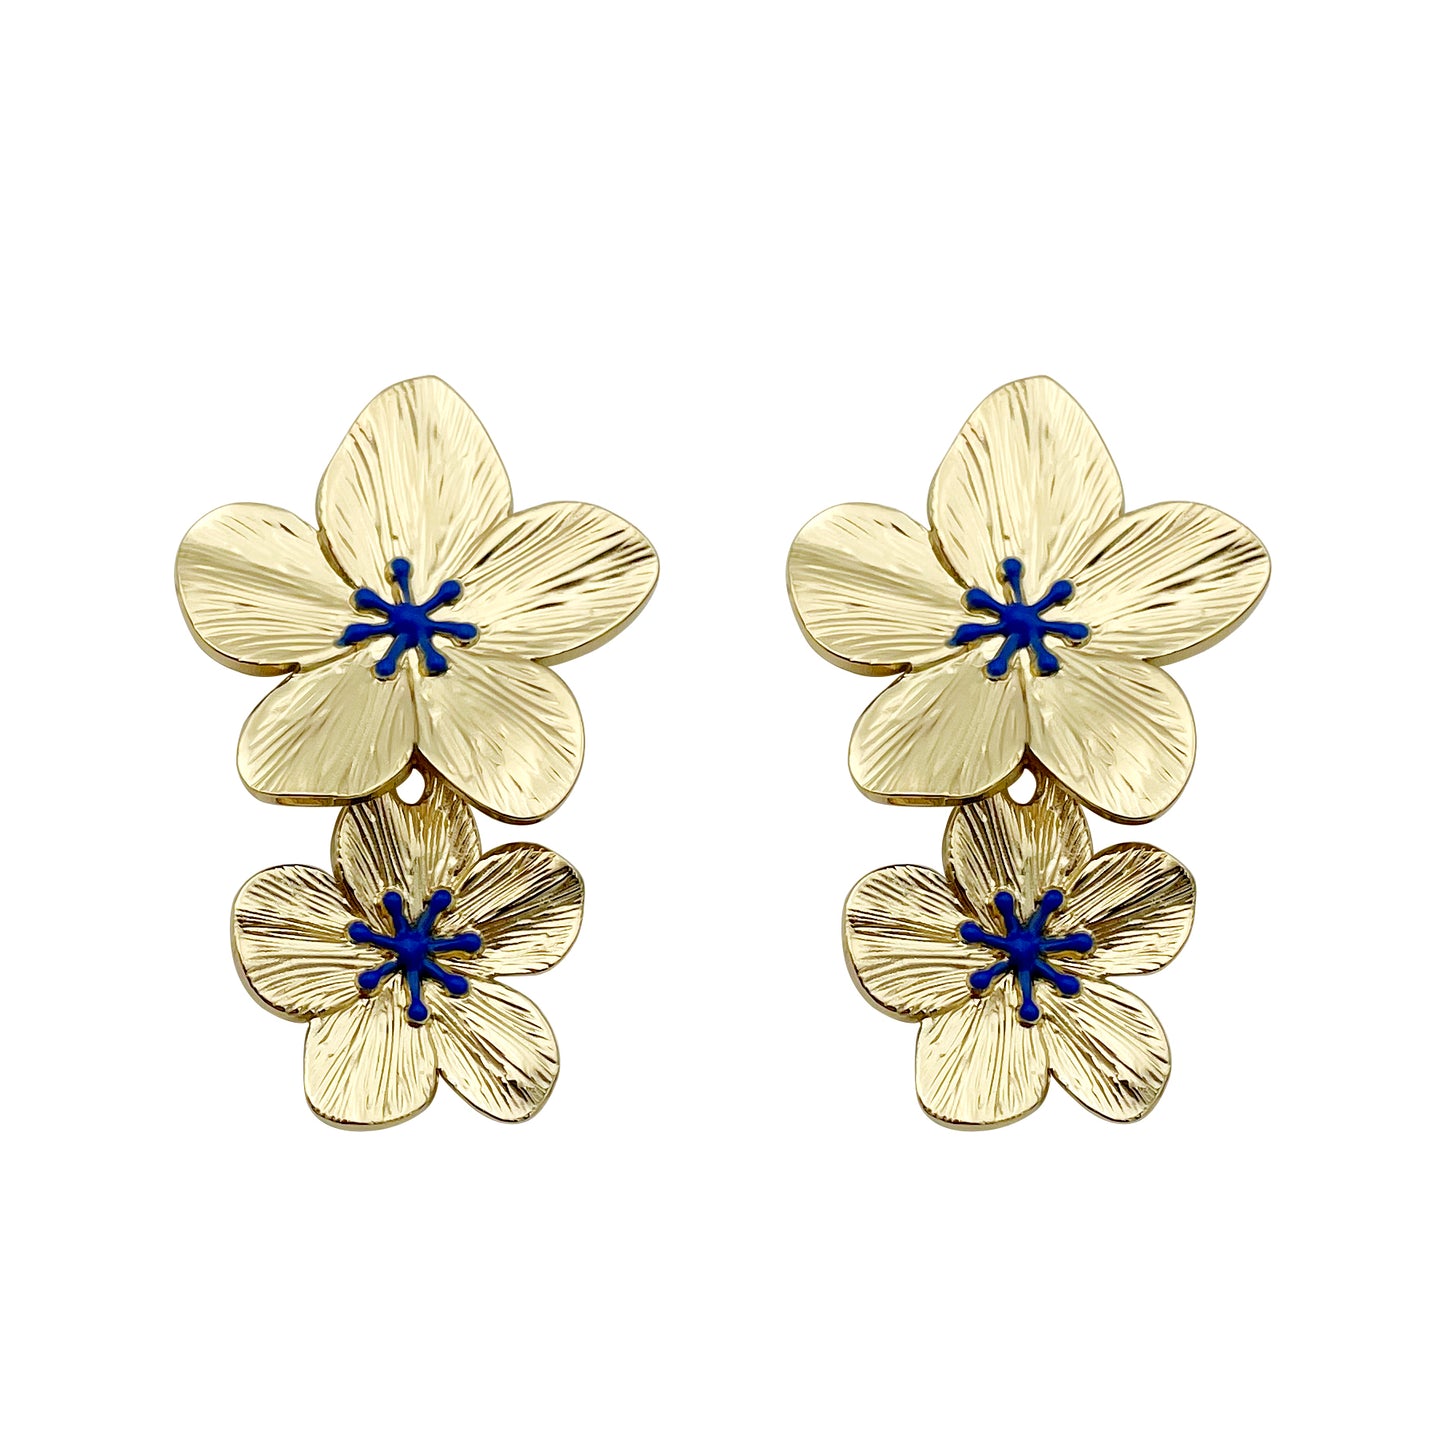 1 Pair Elegant Flower Plating Metal Stainless Steel Gold Plated Ear Studs